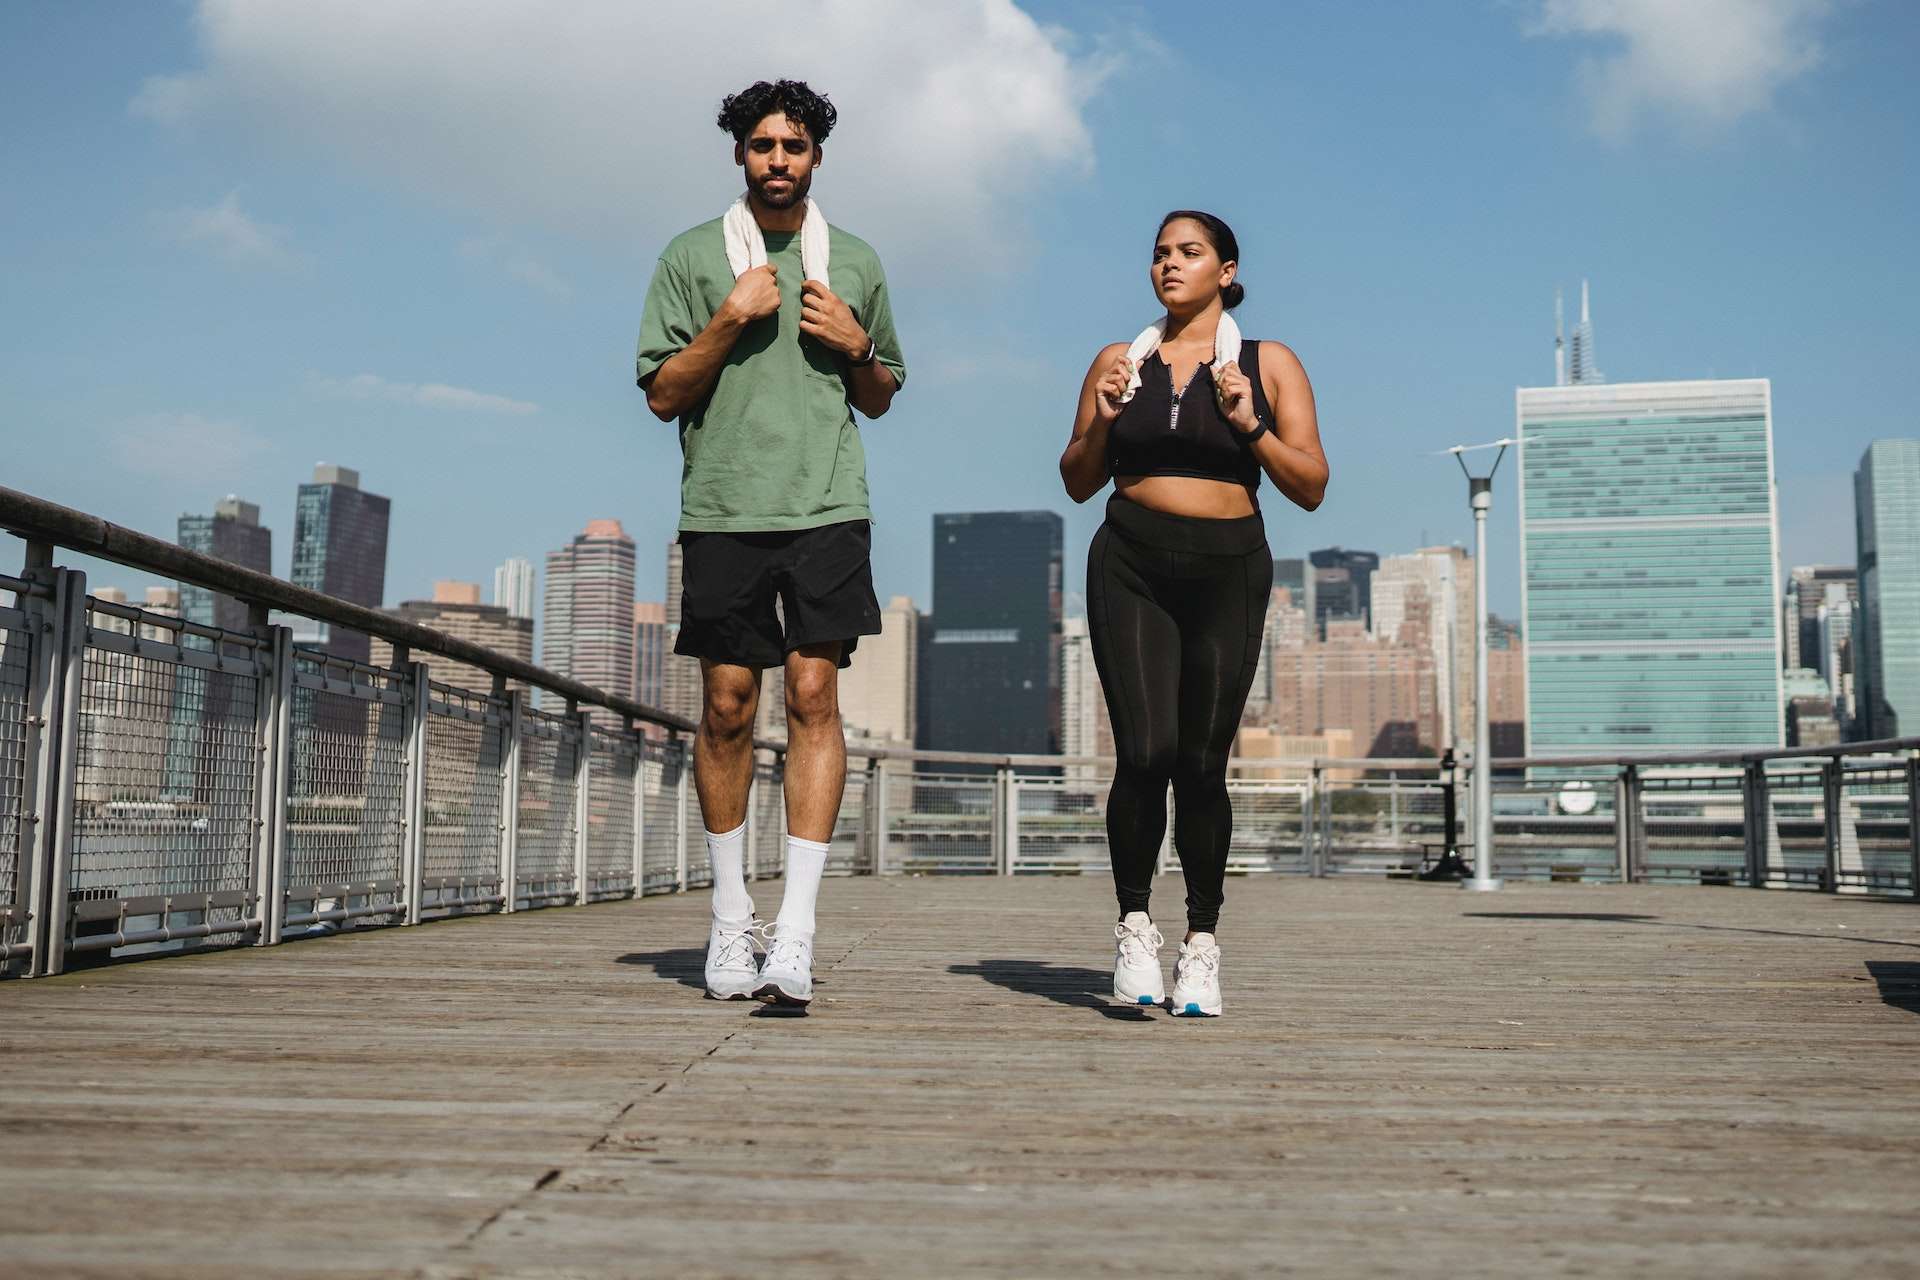 Couple in Sportswear Jogging Outdoors 